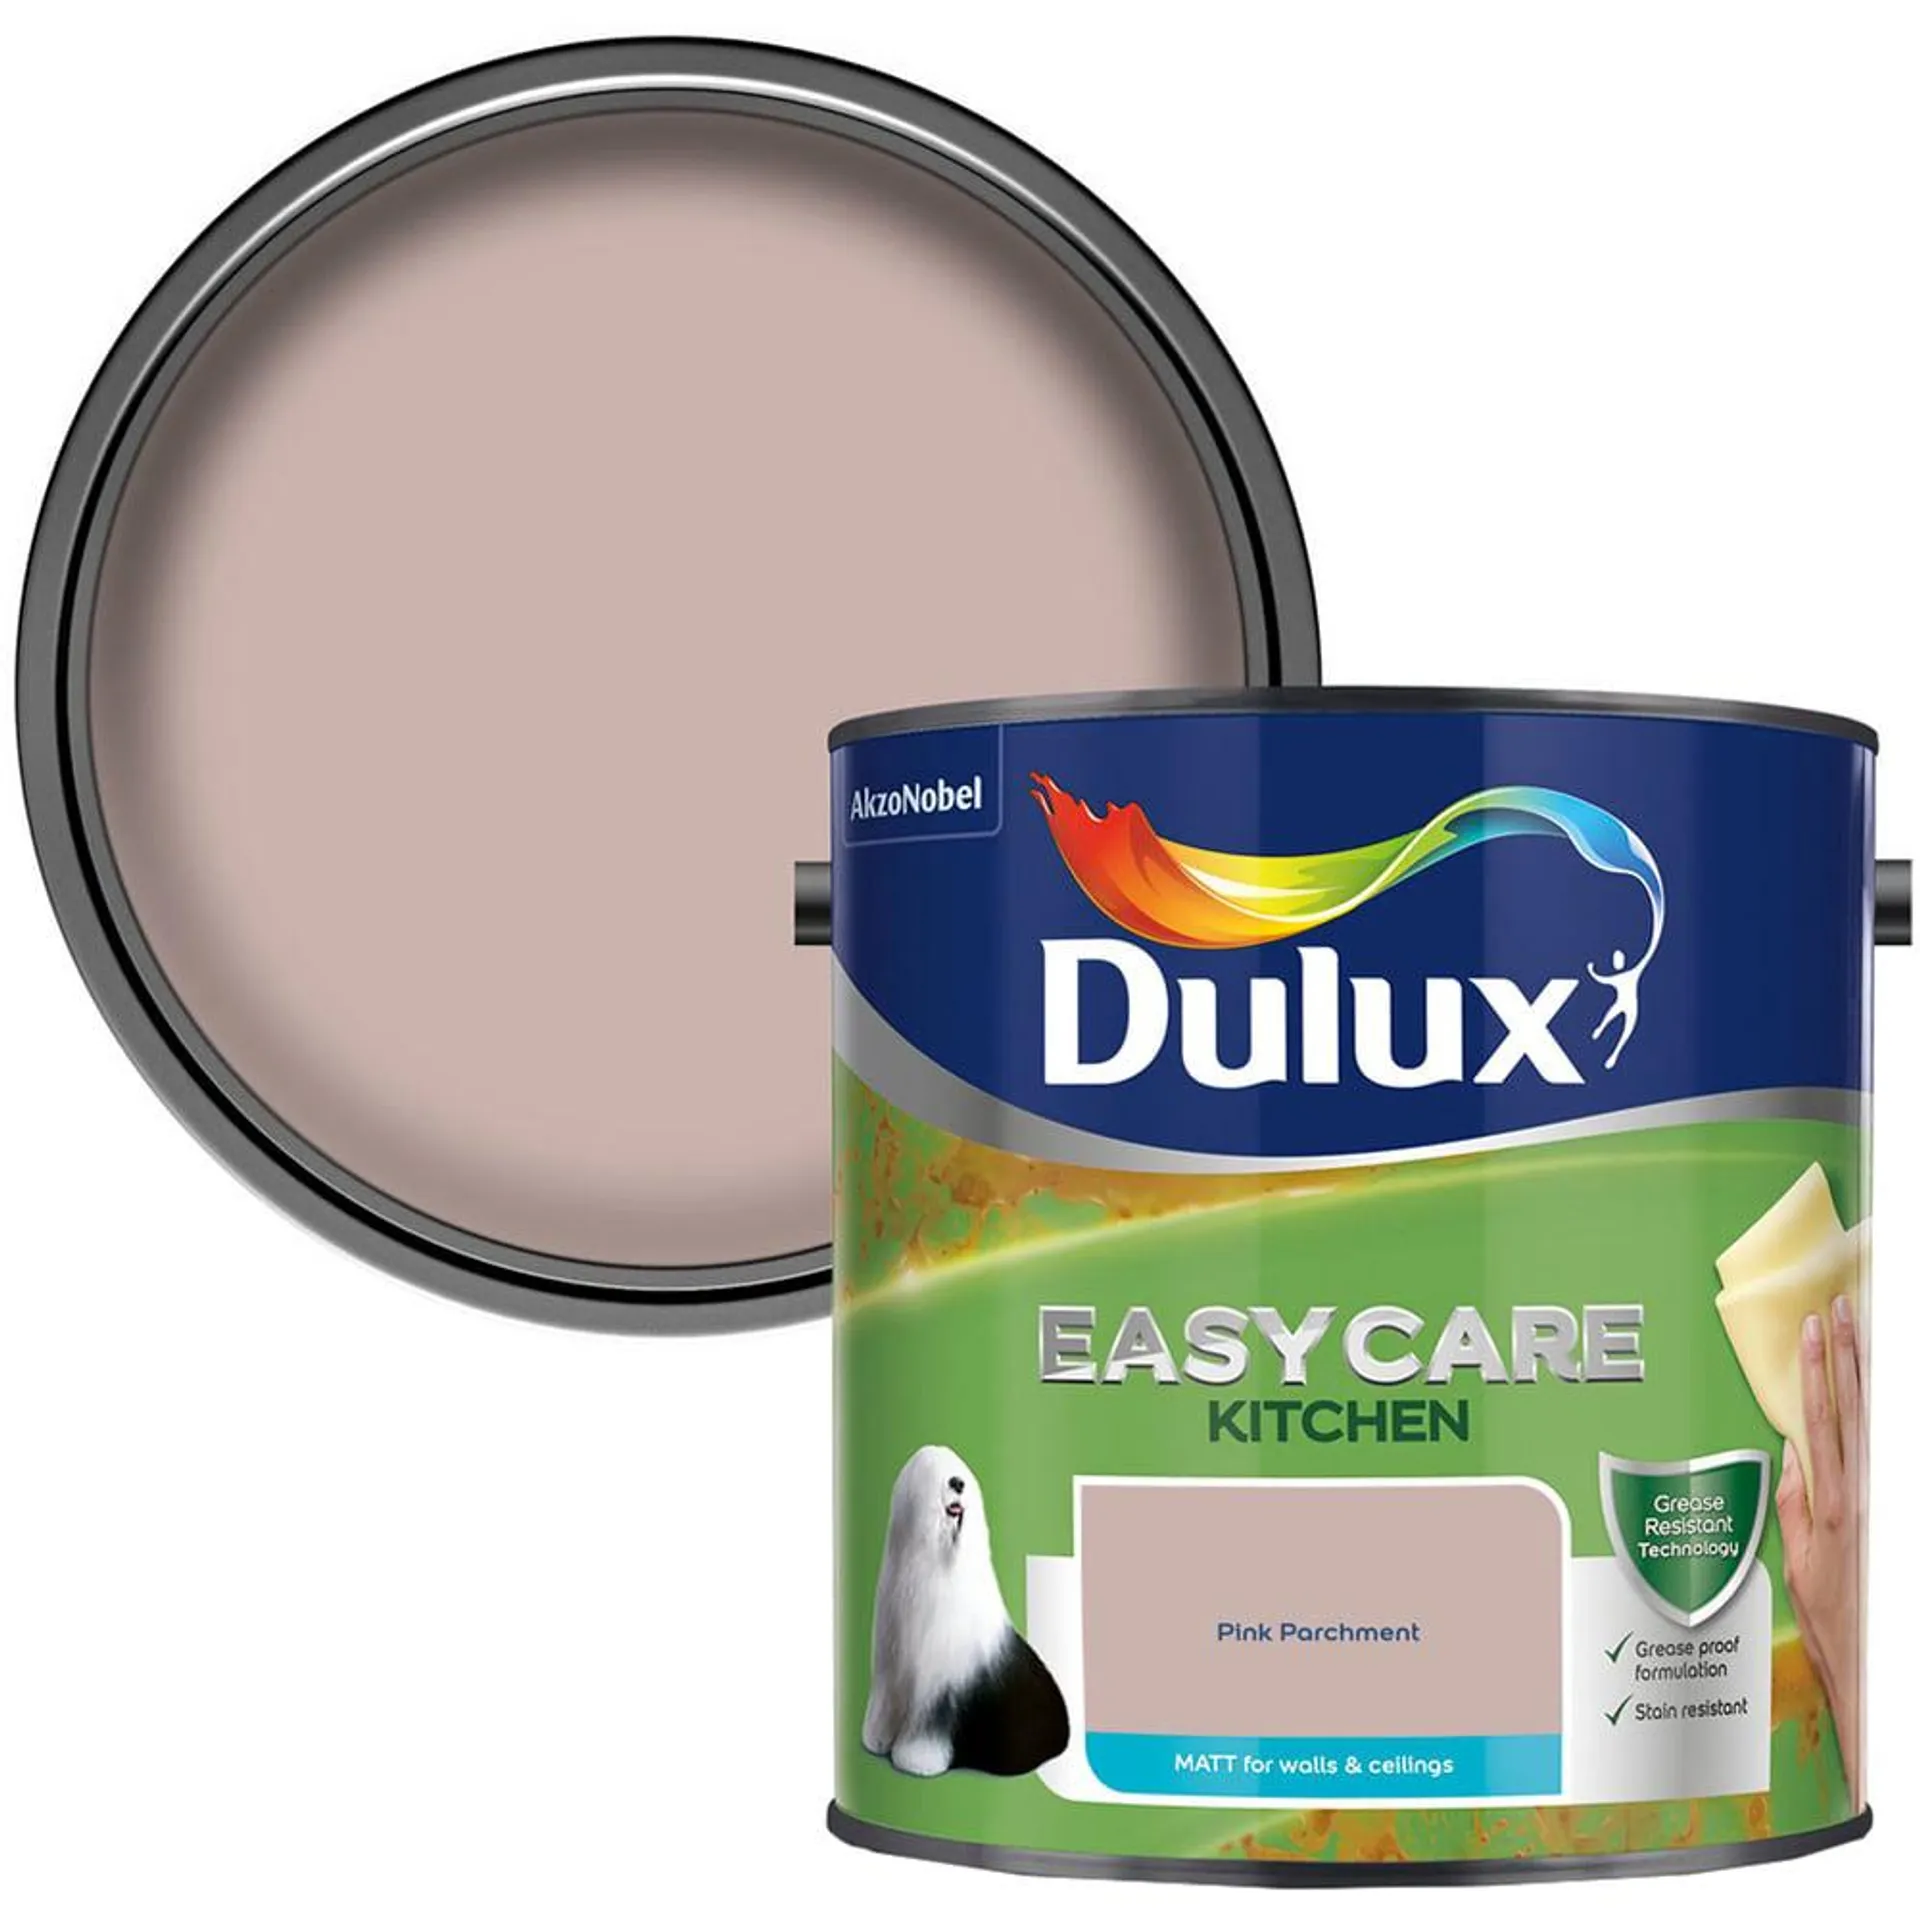 Dulux Easycare Kitchen Pink Parchment Paint 2.5L